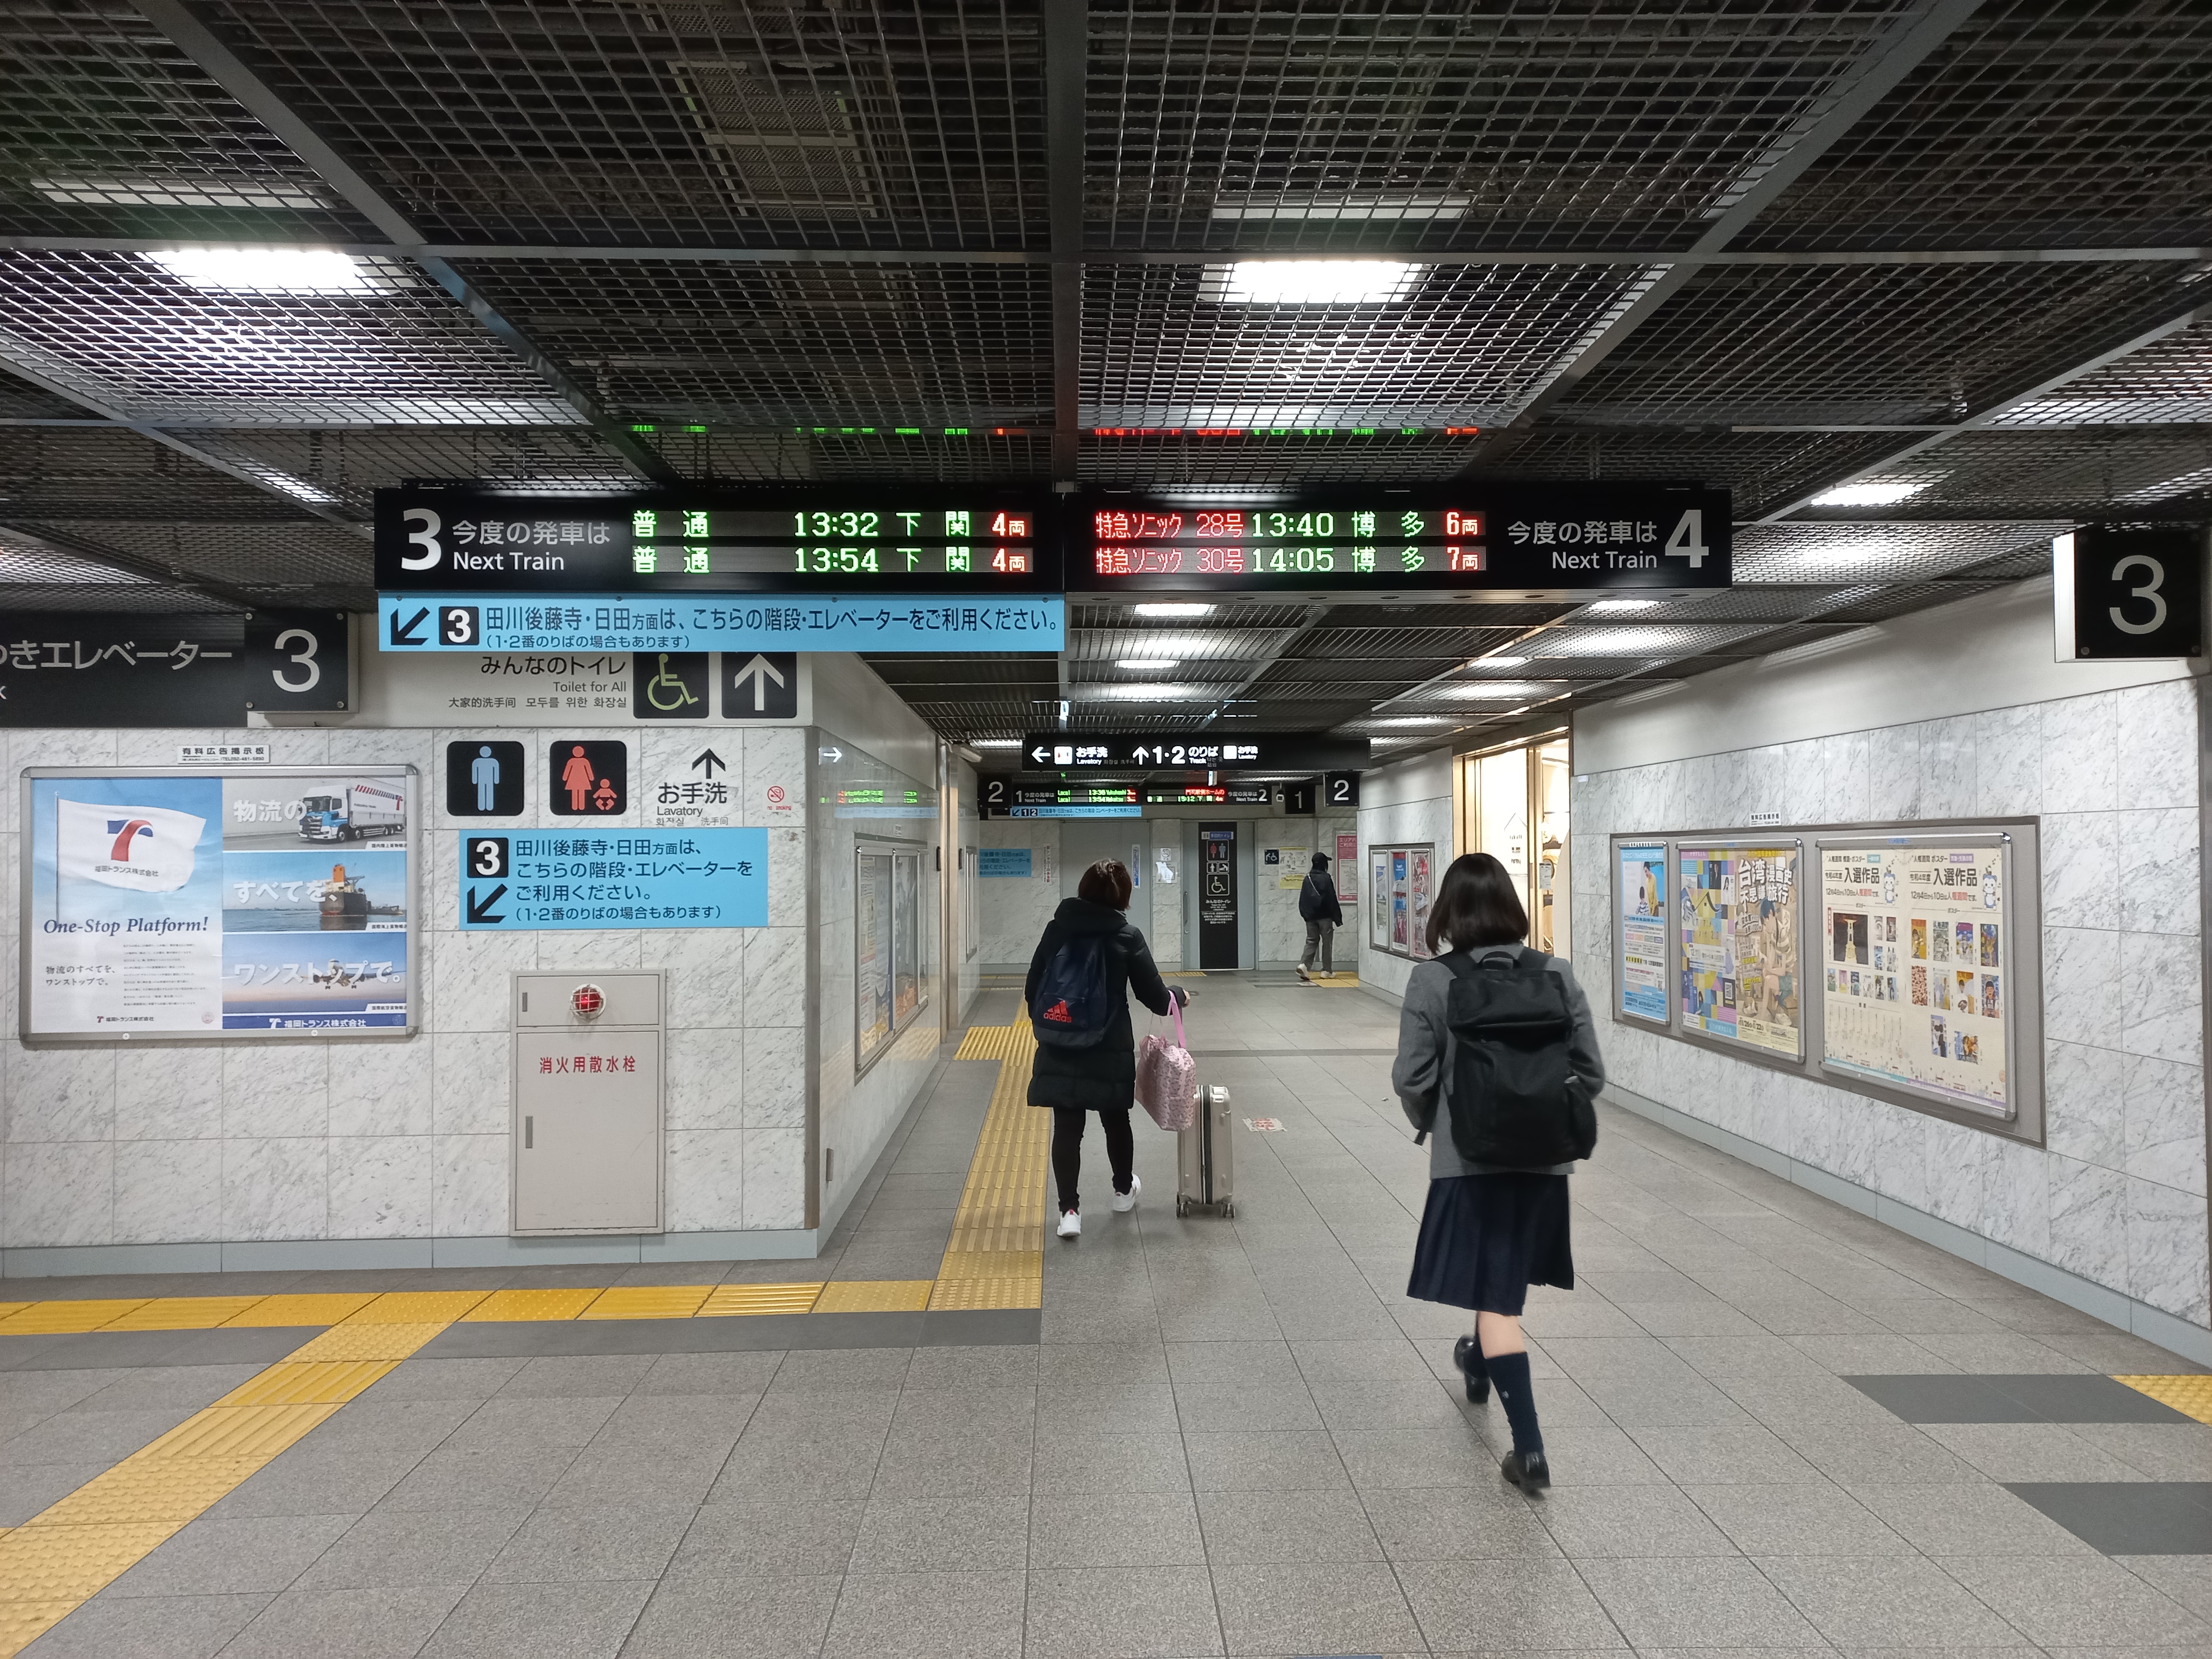 3번 플랫폼이 시모노세키로 간다고 적혀있다.